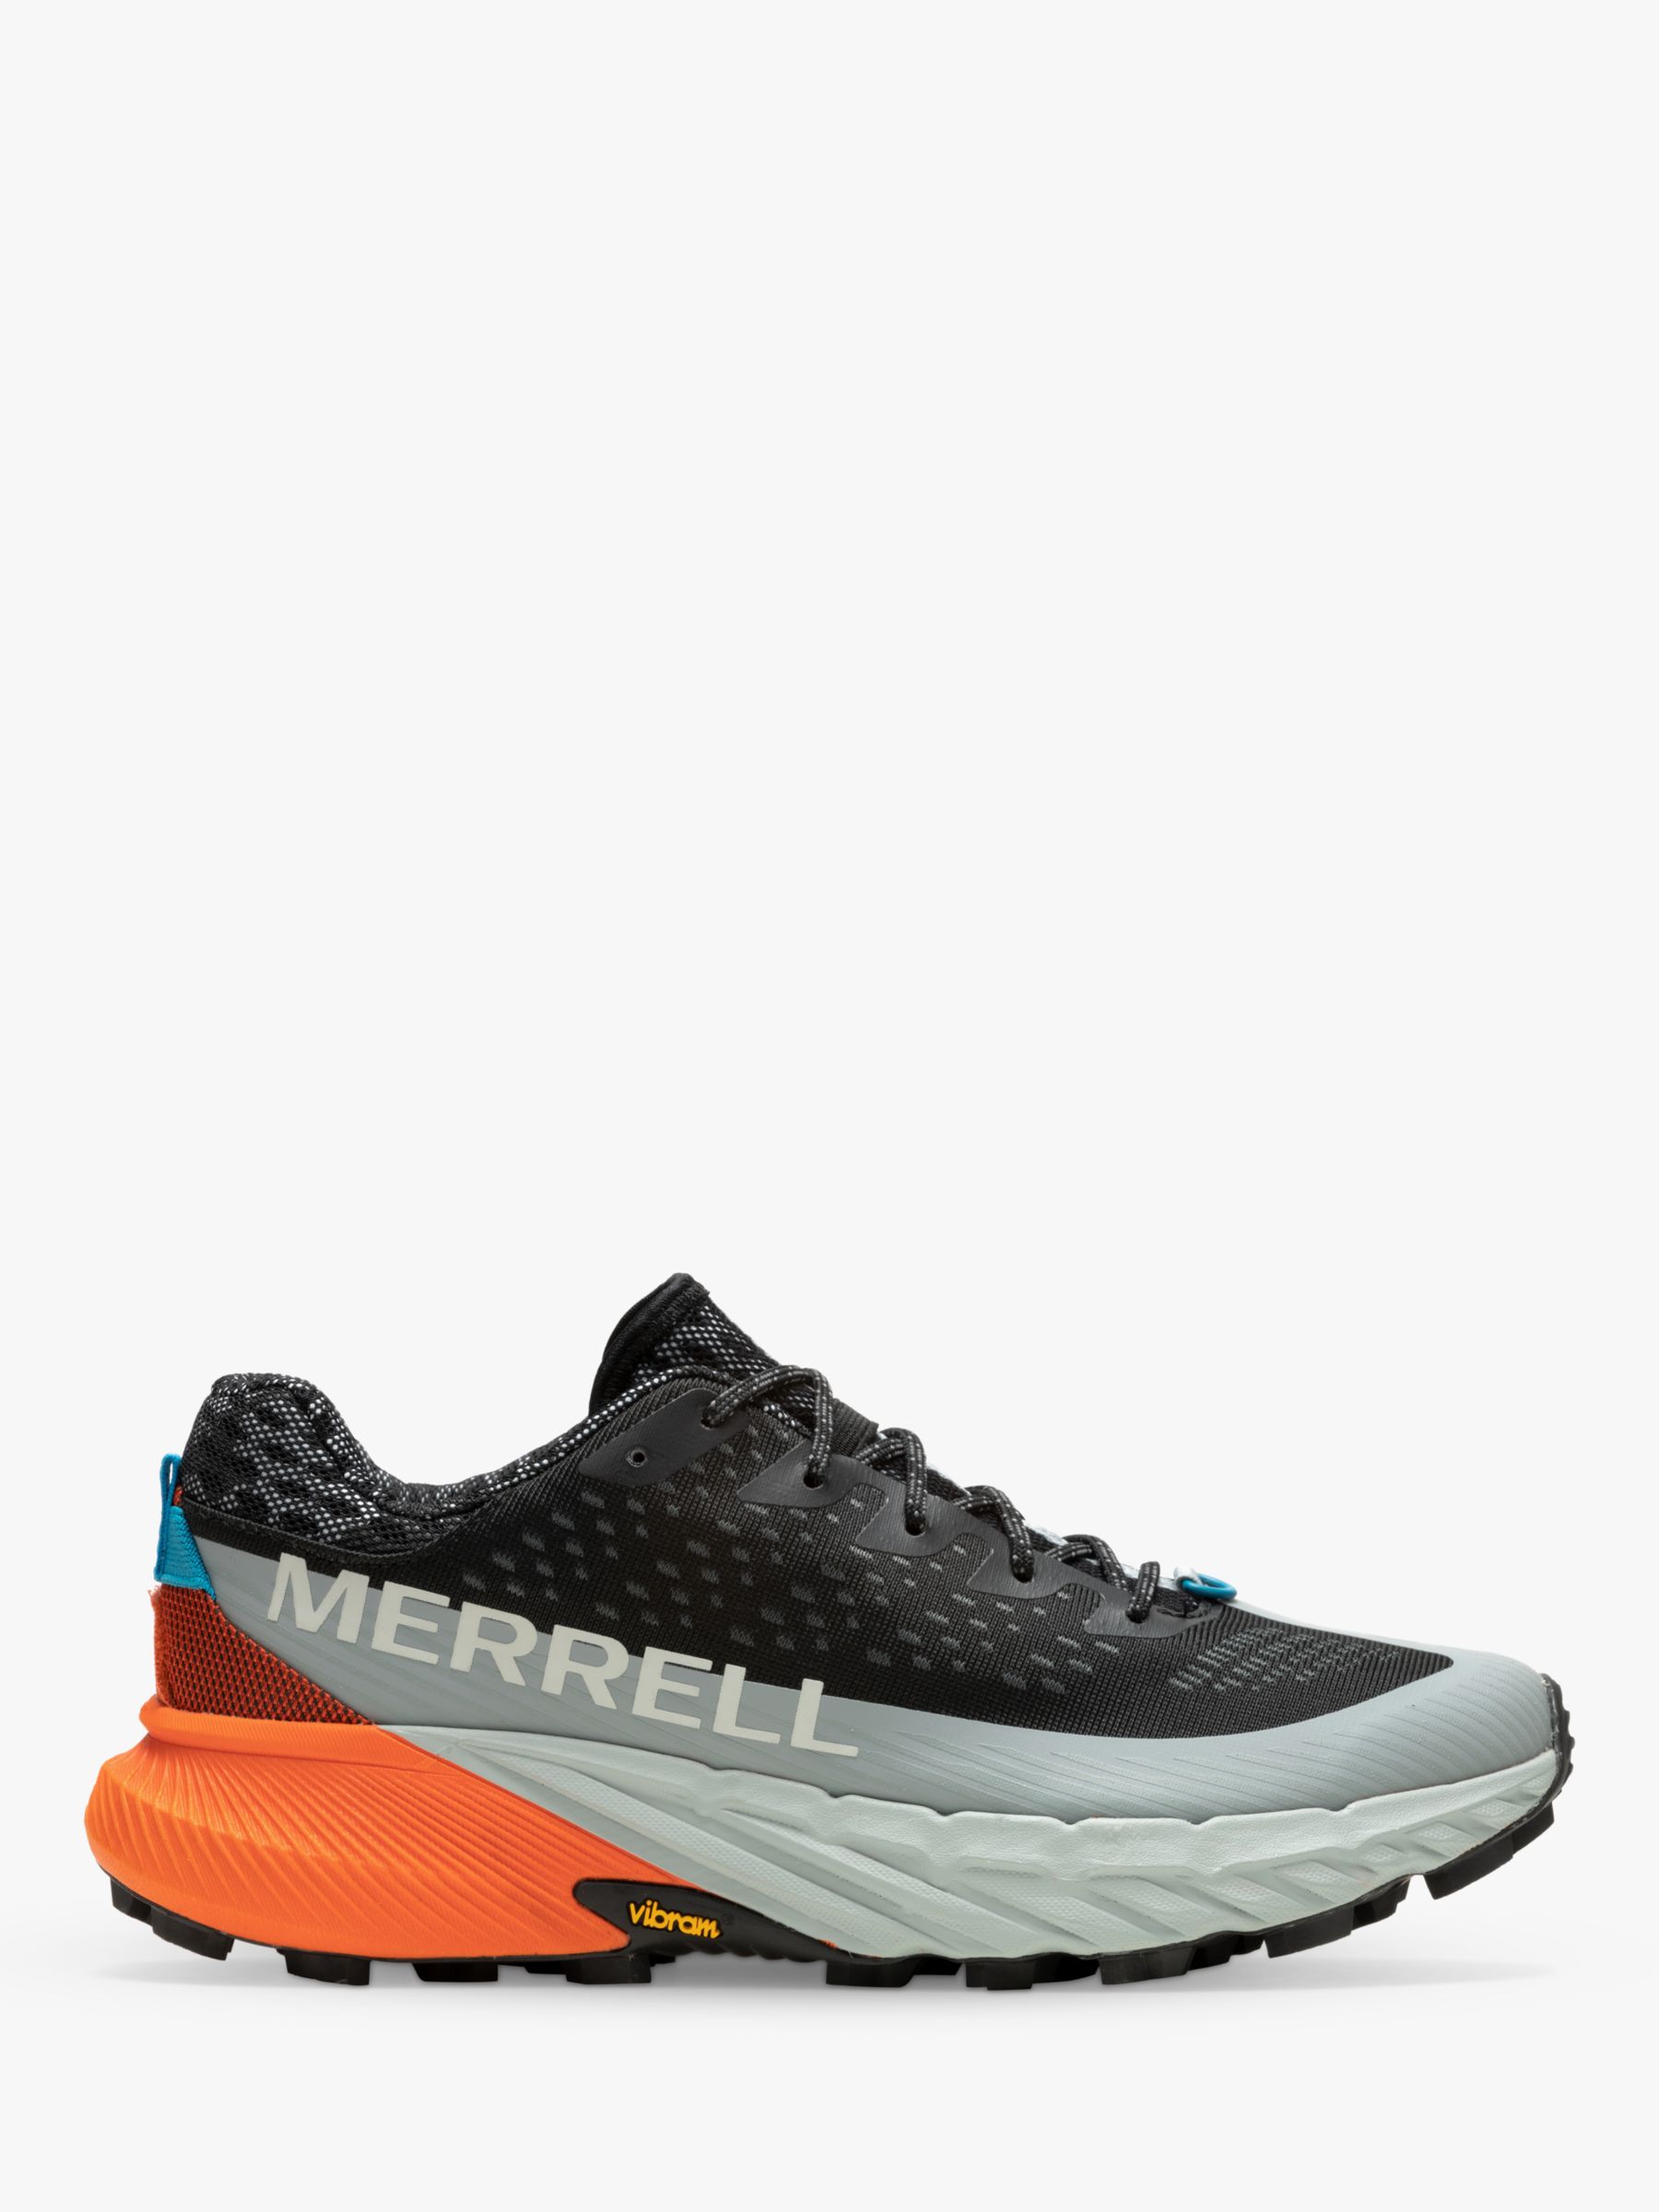 Merrell Agility Peak 5 Men's Trail Running Shoes, Black/Tangerine, 9